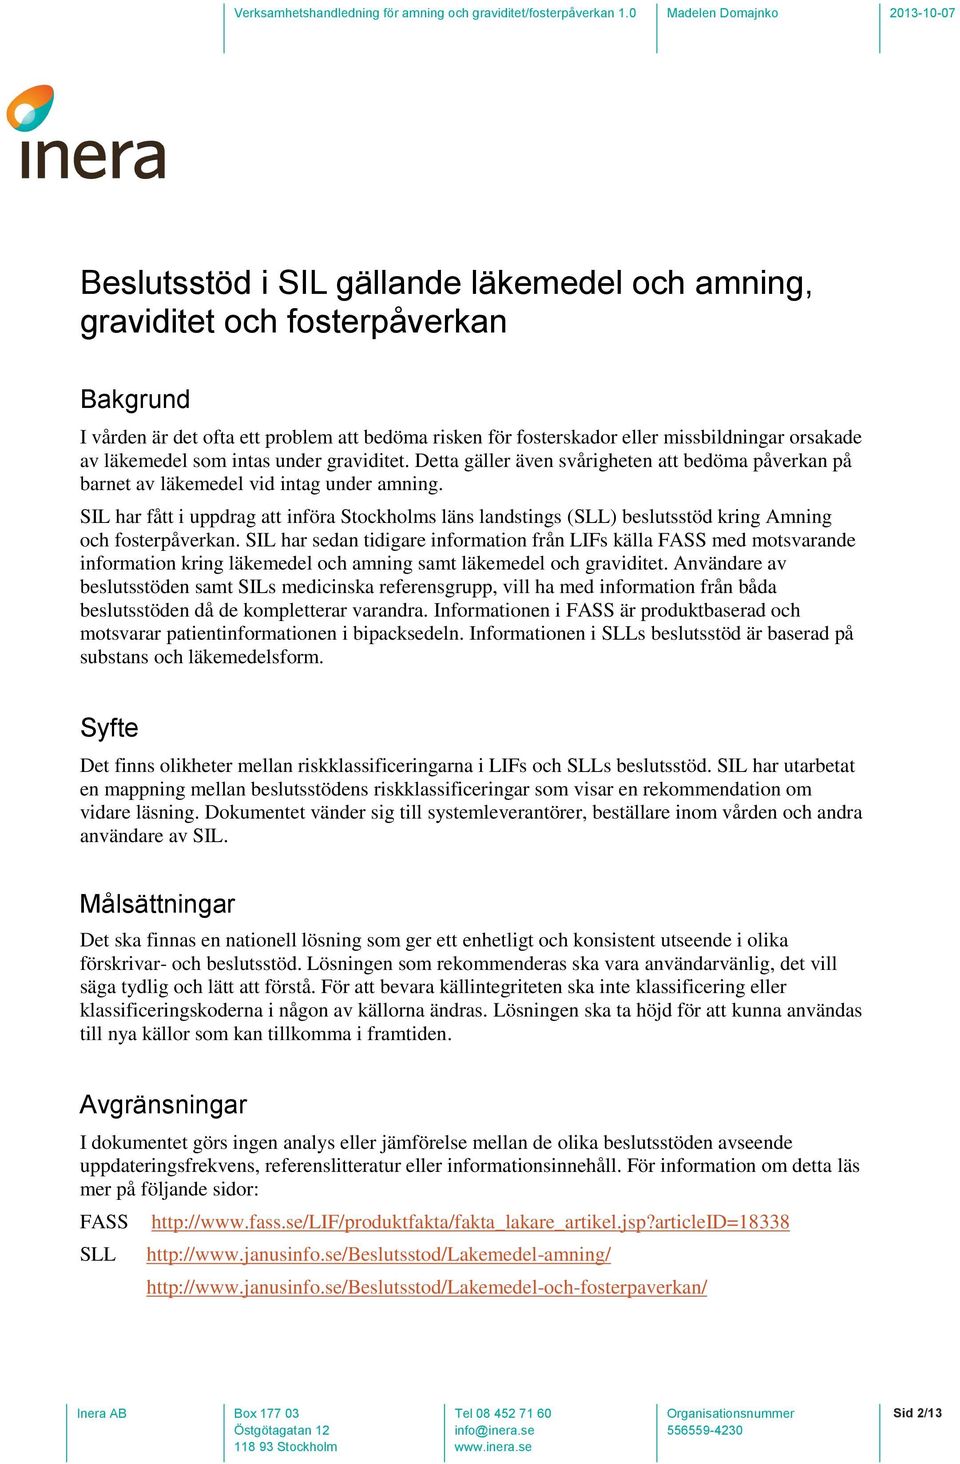 SIL har fått i uppdrag att införa Stockholms läns landstings (SLL) beslutsstöd kring Amning och fosterpåverkan.